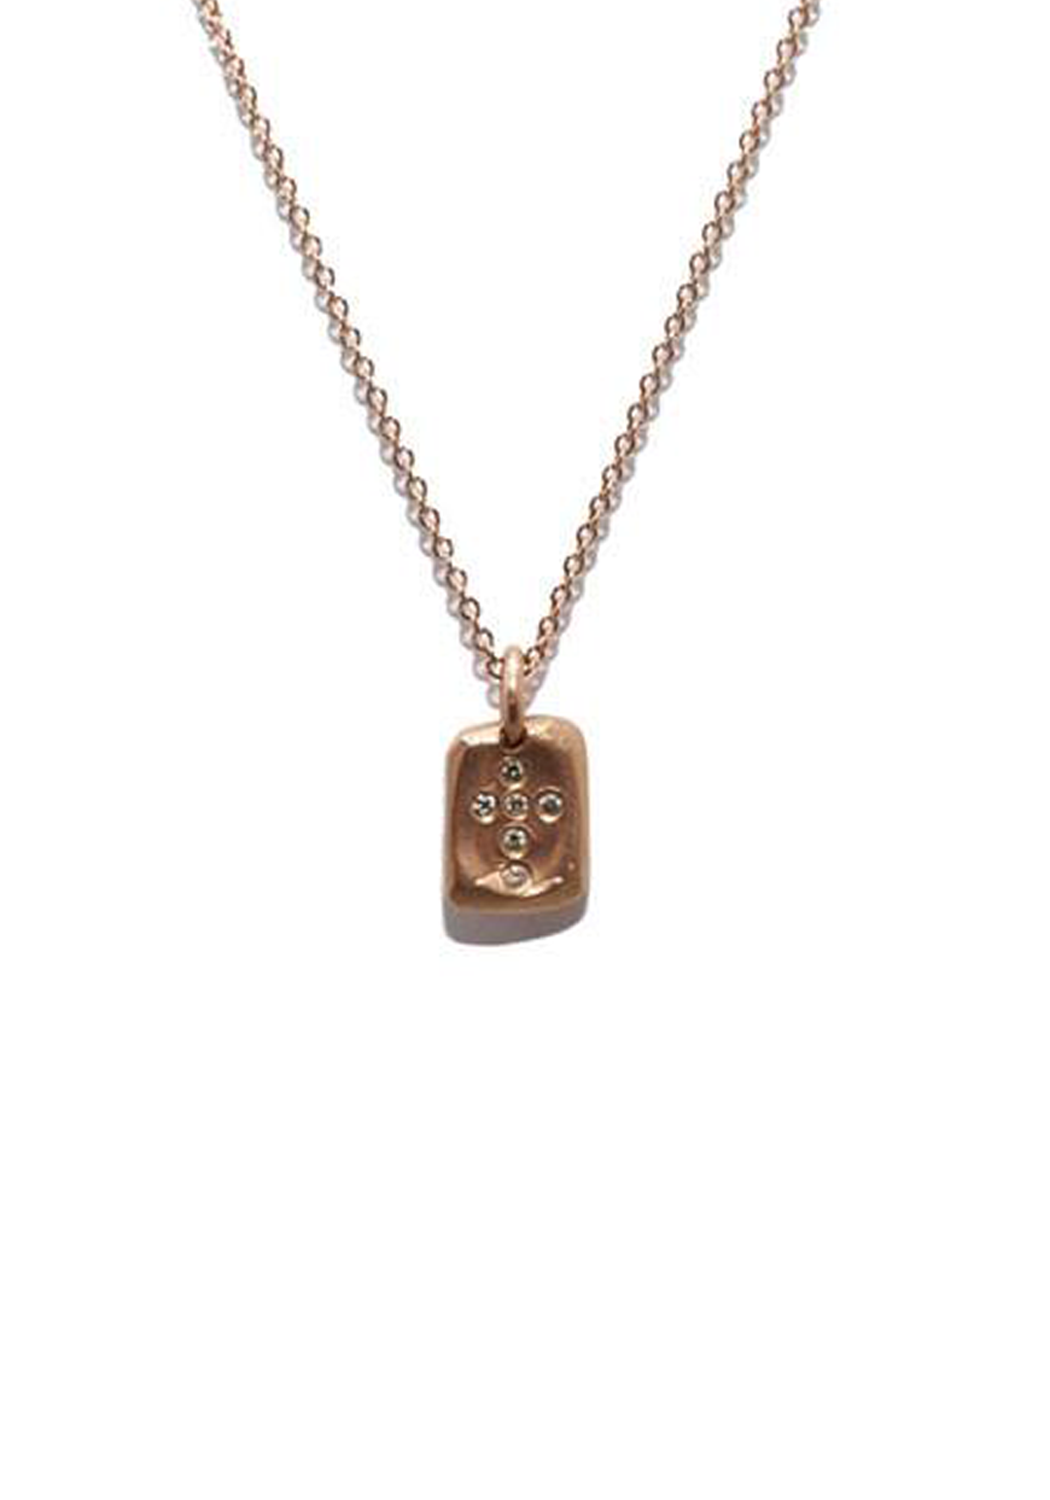 ILA 14K Rose Gold Diamond Cross Pendant Necklace | OsterJewelers.com